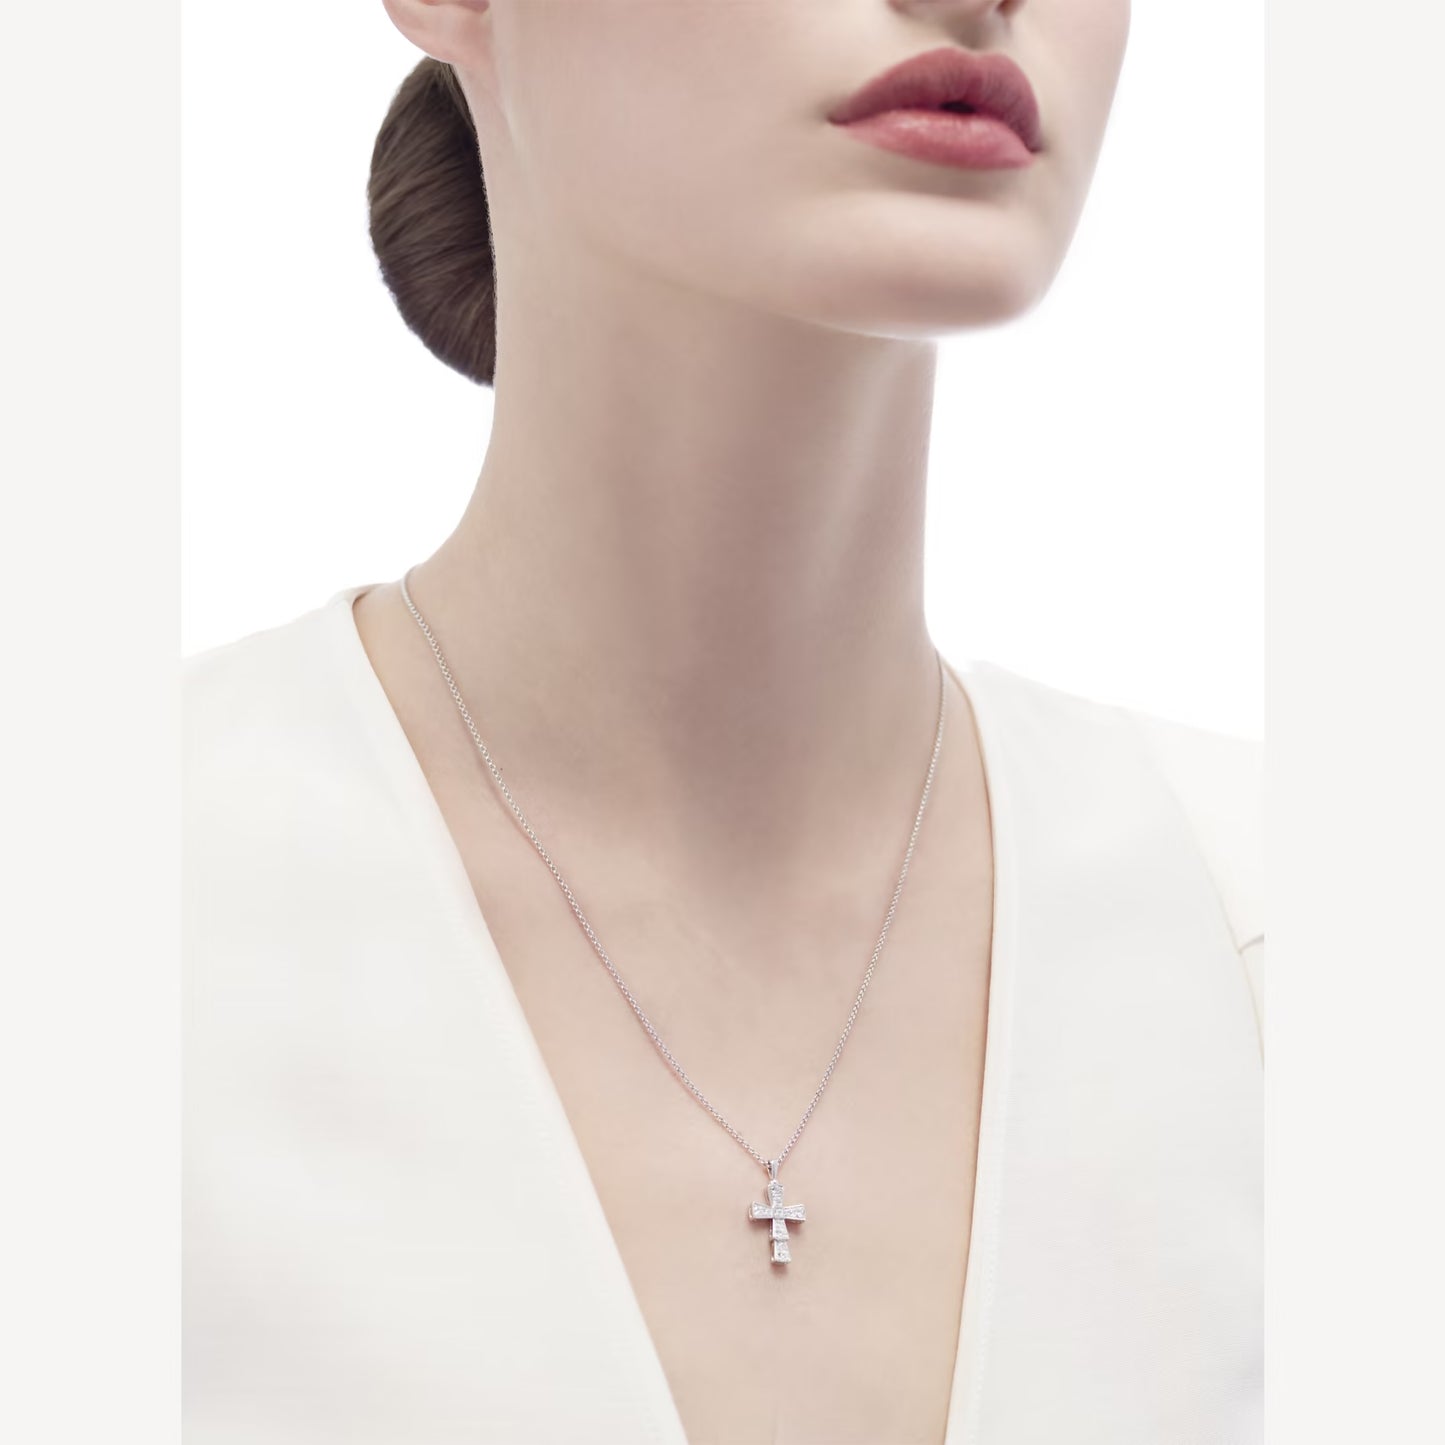 Bulgari Croce Pendant Necklace “White Gold / Diamonds”